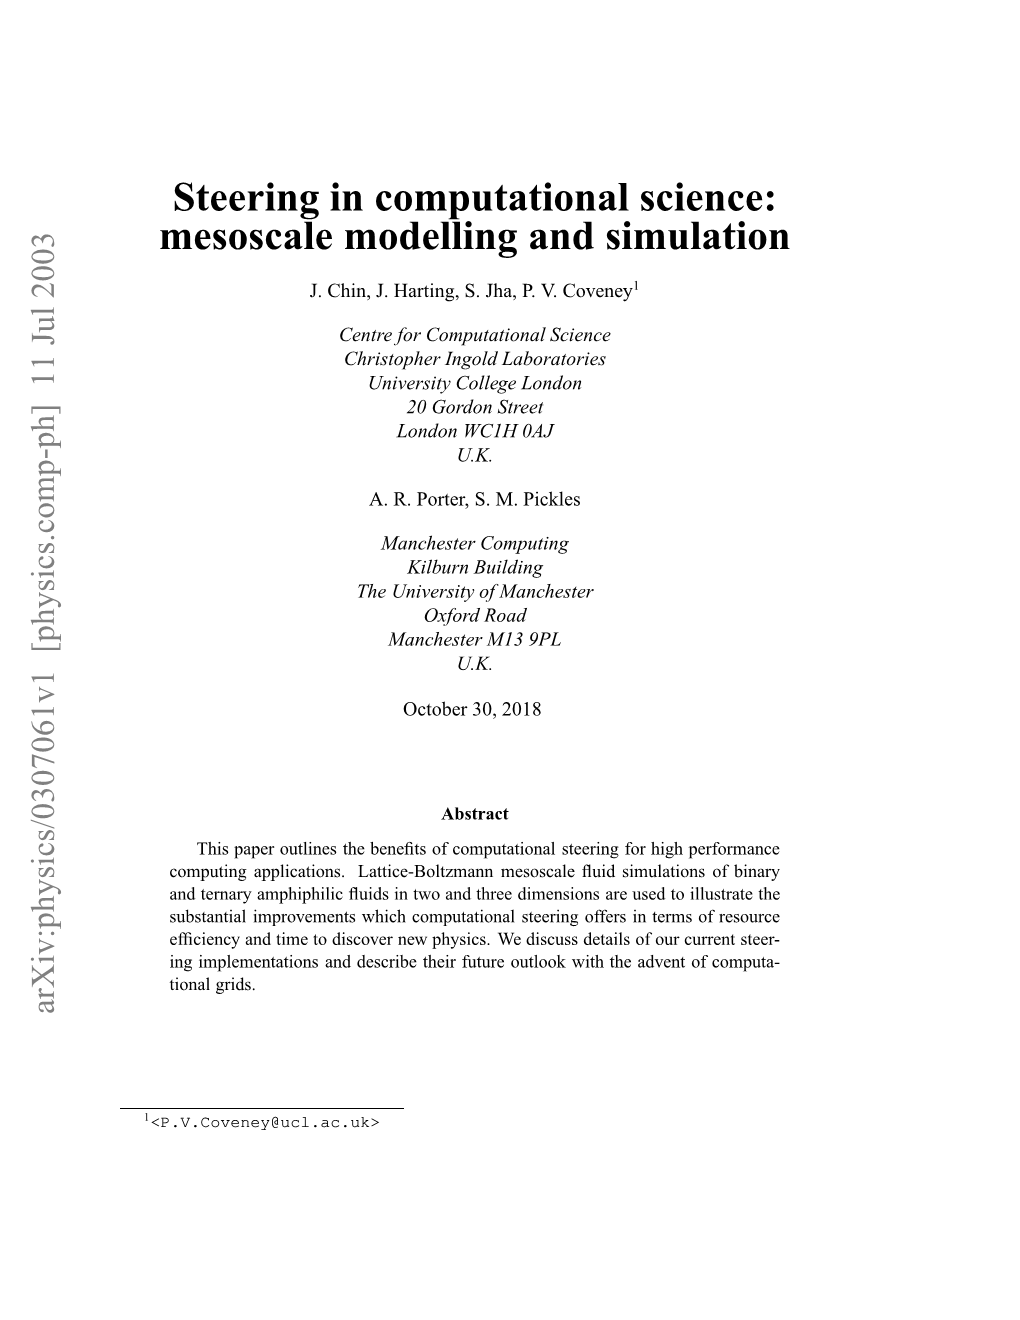 Steering in Computational Science